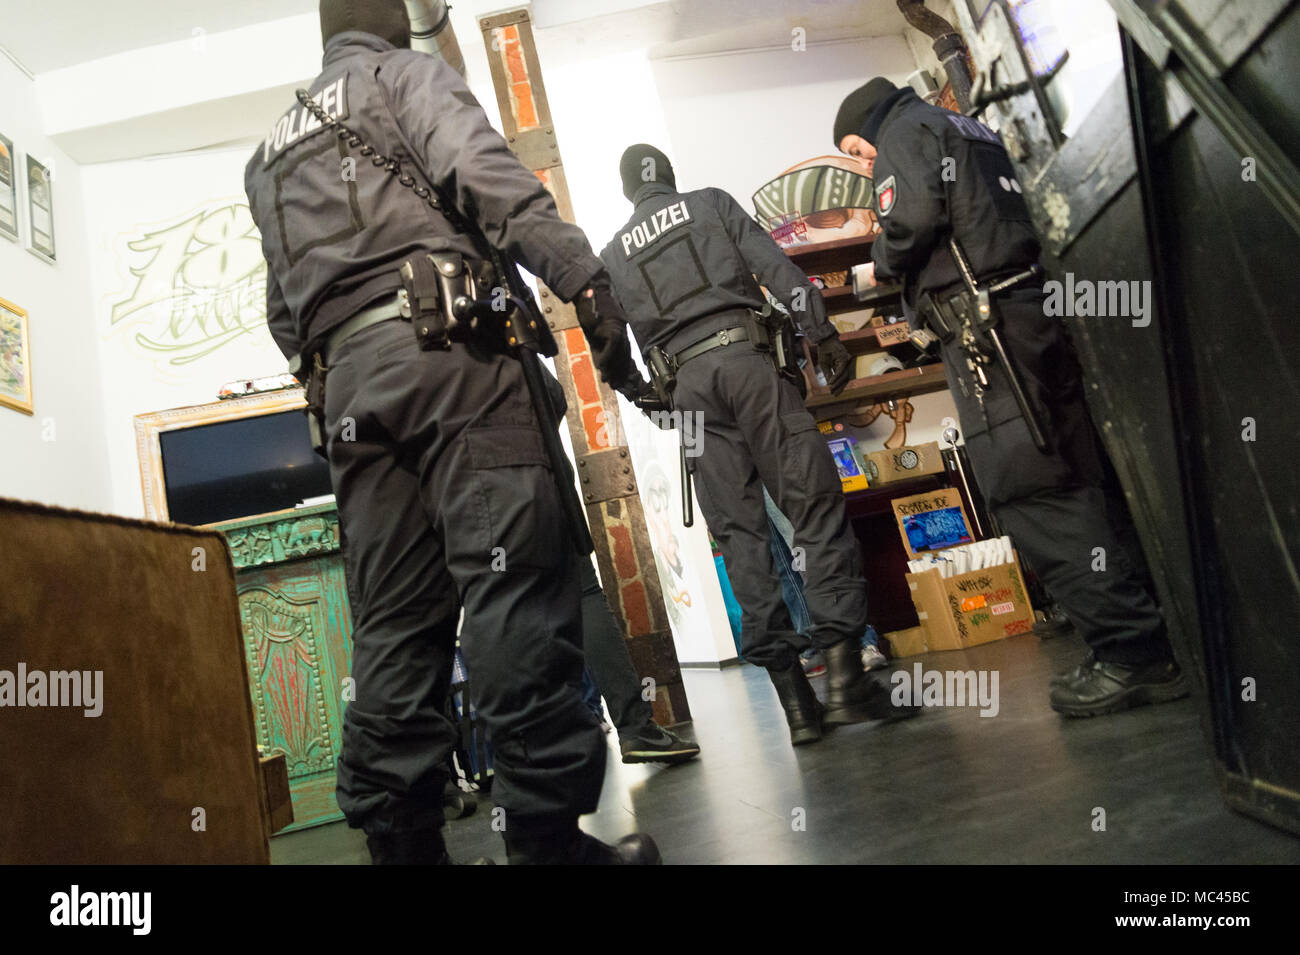 11. Avril 2018, l'Allemagne, Hambourg : policiers perquisitionner dans les locaux de la Boutique des amateurs de hip-hop '187 Strassenbande» au cours d'une descente de police dans les premières heures du matin. Un porte-parole de la police a déclaré que le raid a eu lieu pour violation présumée de la loi des armes à feu et de stupéfiants. Photo : afp/Joto Banque D'Images